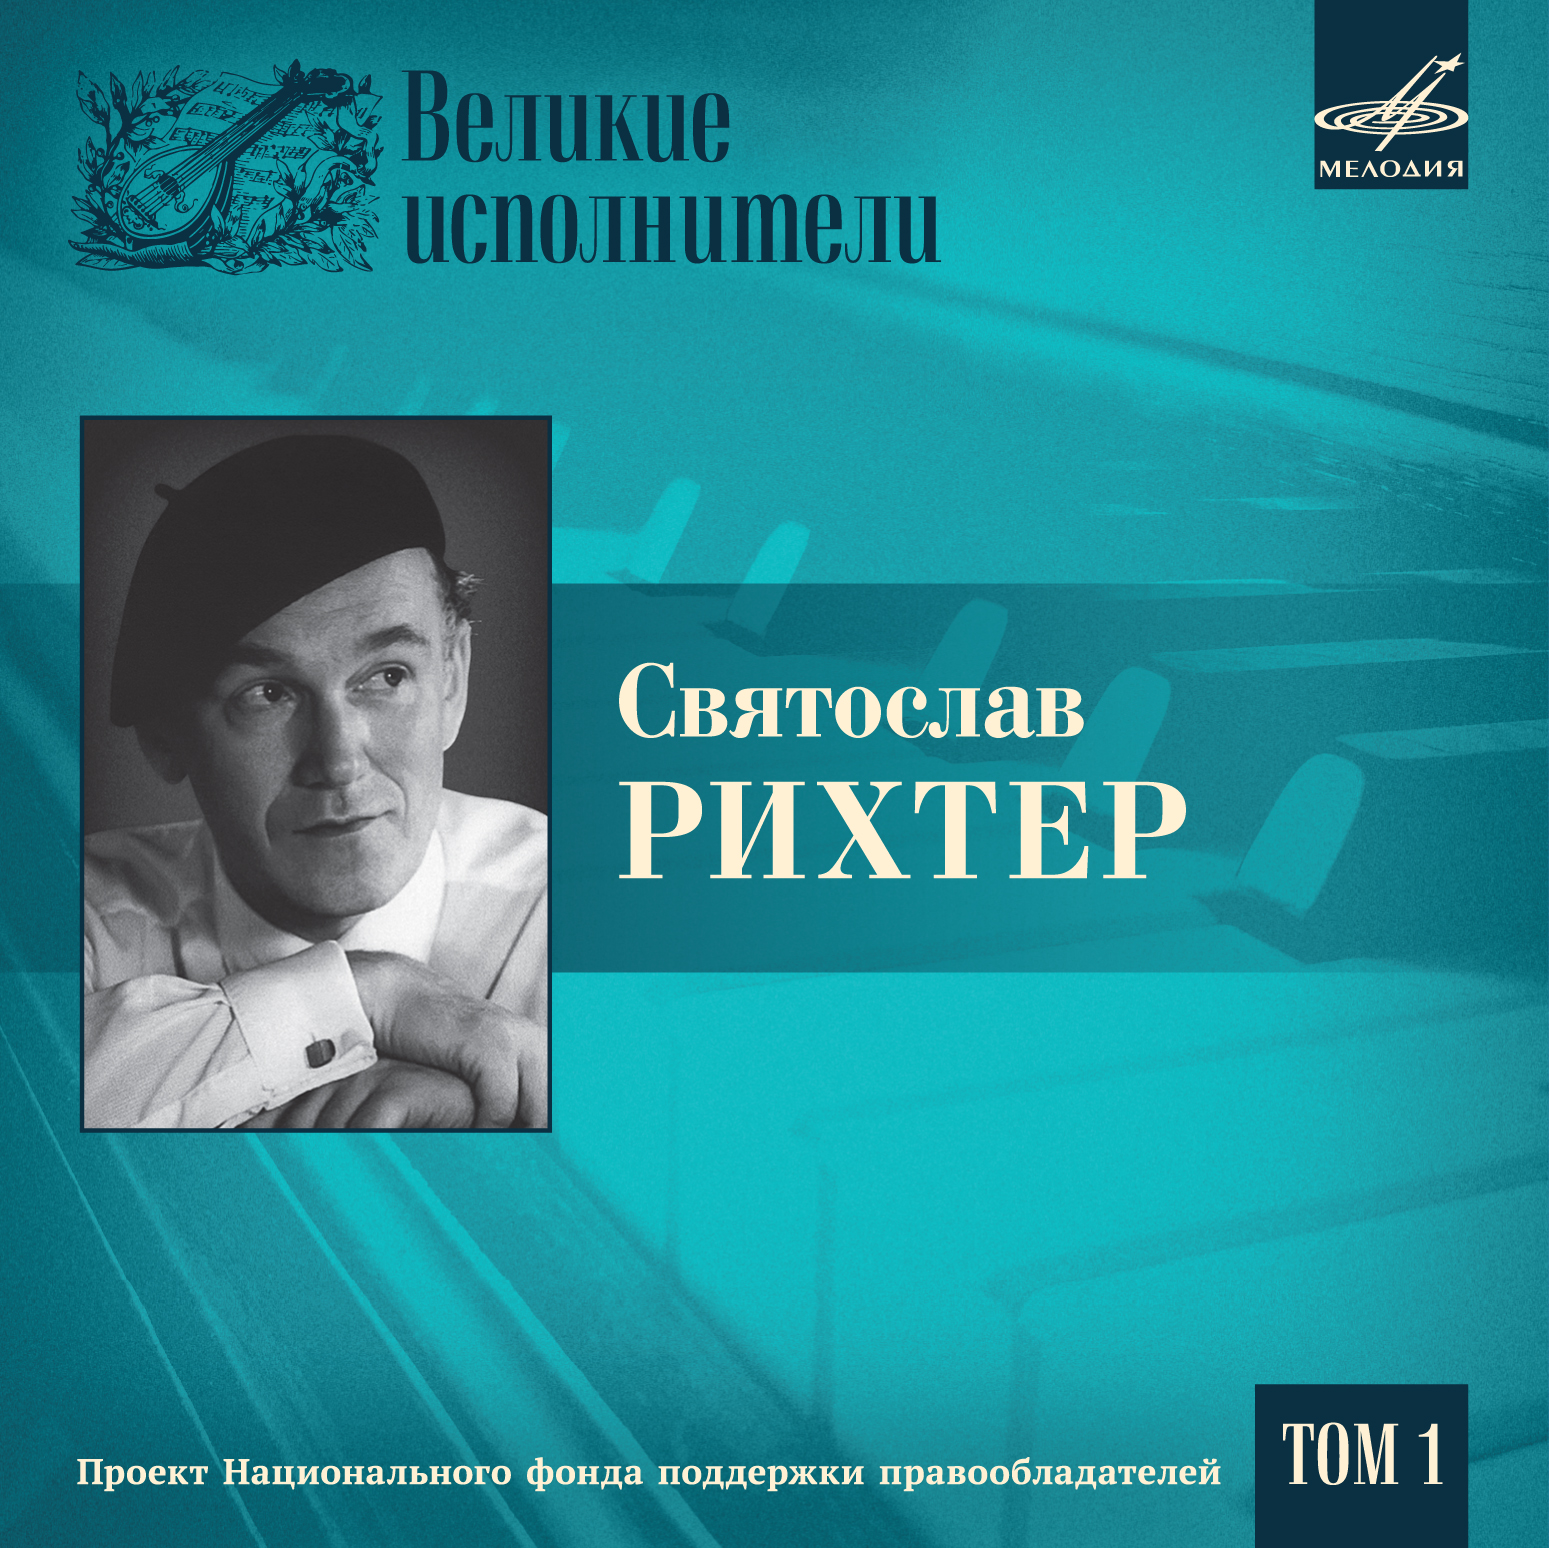 НФПП выпустил сборник с записями исполнений выдающегося пианиста Святослава Рихтера